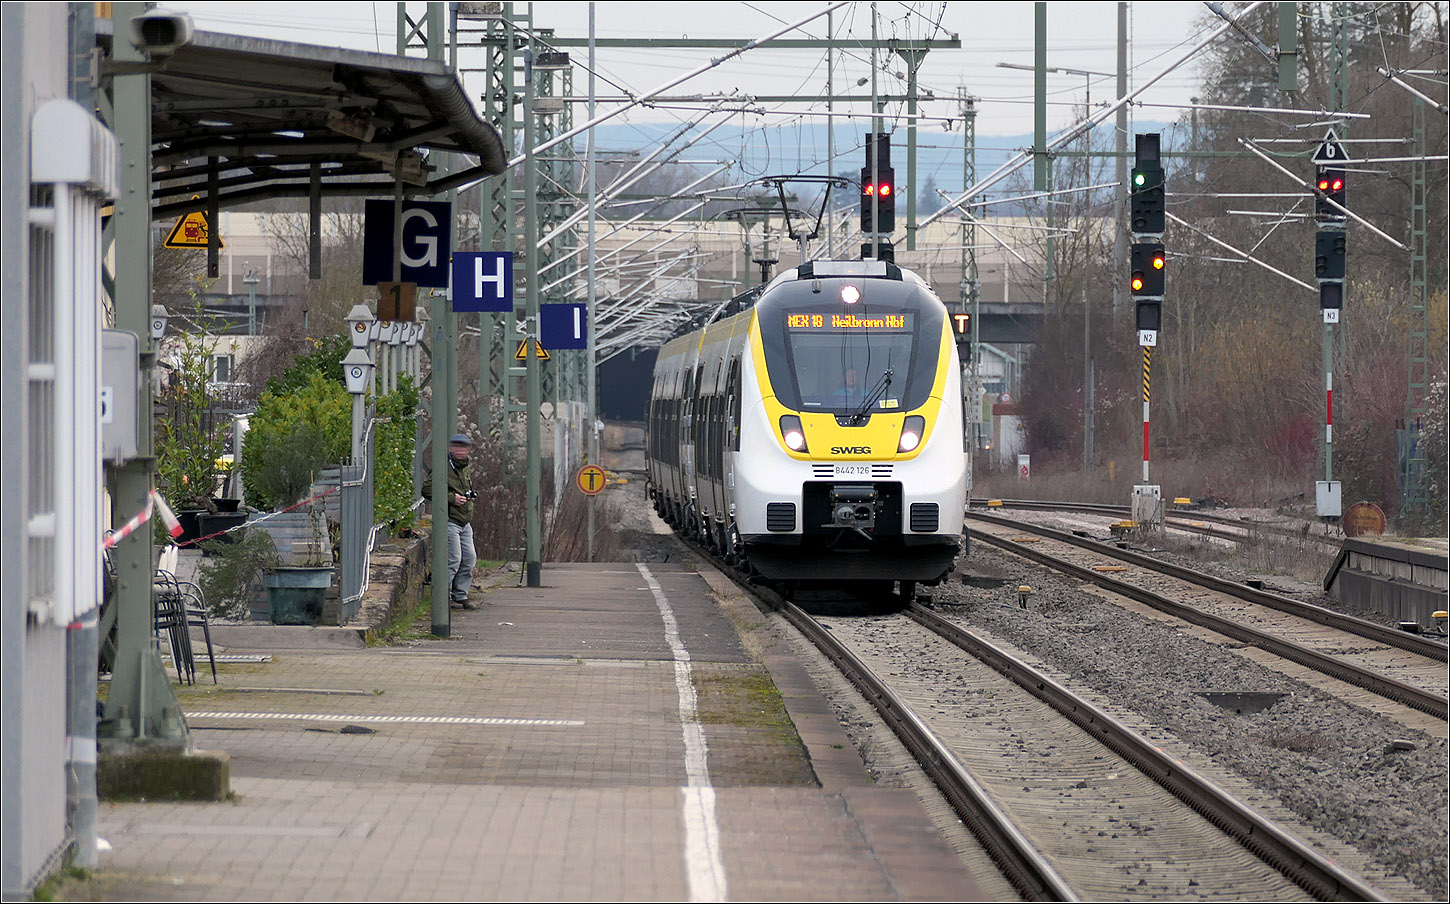 Einfahrt eines Talent II-Triebwagens - 

... 8442 126 als MEX 18 in den Bahnhof Wendlingen. Obwohl der Stuttgarter Hauptbahnhof noch ein Kopfbahnhof ist, wird die Linie nach Heilbronn bzw. Neckarsulm durchgebunden. 

Nach Fertigstellung von Stuttgart 21 wird hier der MEX 13 von Tübingen nach Aalen verkehren, da im neuen Stuttgarter Hauptbahnhof es sinnvoll ist die Strecken die auf den Außengleisen ankommen auf die durchzubinden, die den Bahnhof auch auf den Außengleisen verlassen, das heißt von der Zuführung Untertürkheim zur Zuführung Bad Cannstatt. Das gleiche gilt für die Innengleise vom Fildertunnel nach zur Zuführung Feuerbach. So werden Gleiskreuzungen im Vorfeld des Bahnhofes vermieden. Der Bau der P-Option von der Zuführung Bad Cannstatt nach Feuerbach wird da mehr Flexibilität ermöglichen.

21.02.2024 (M)